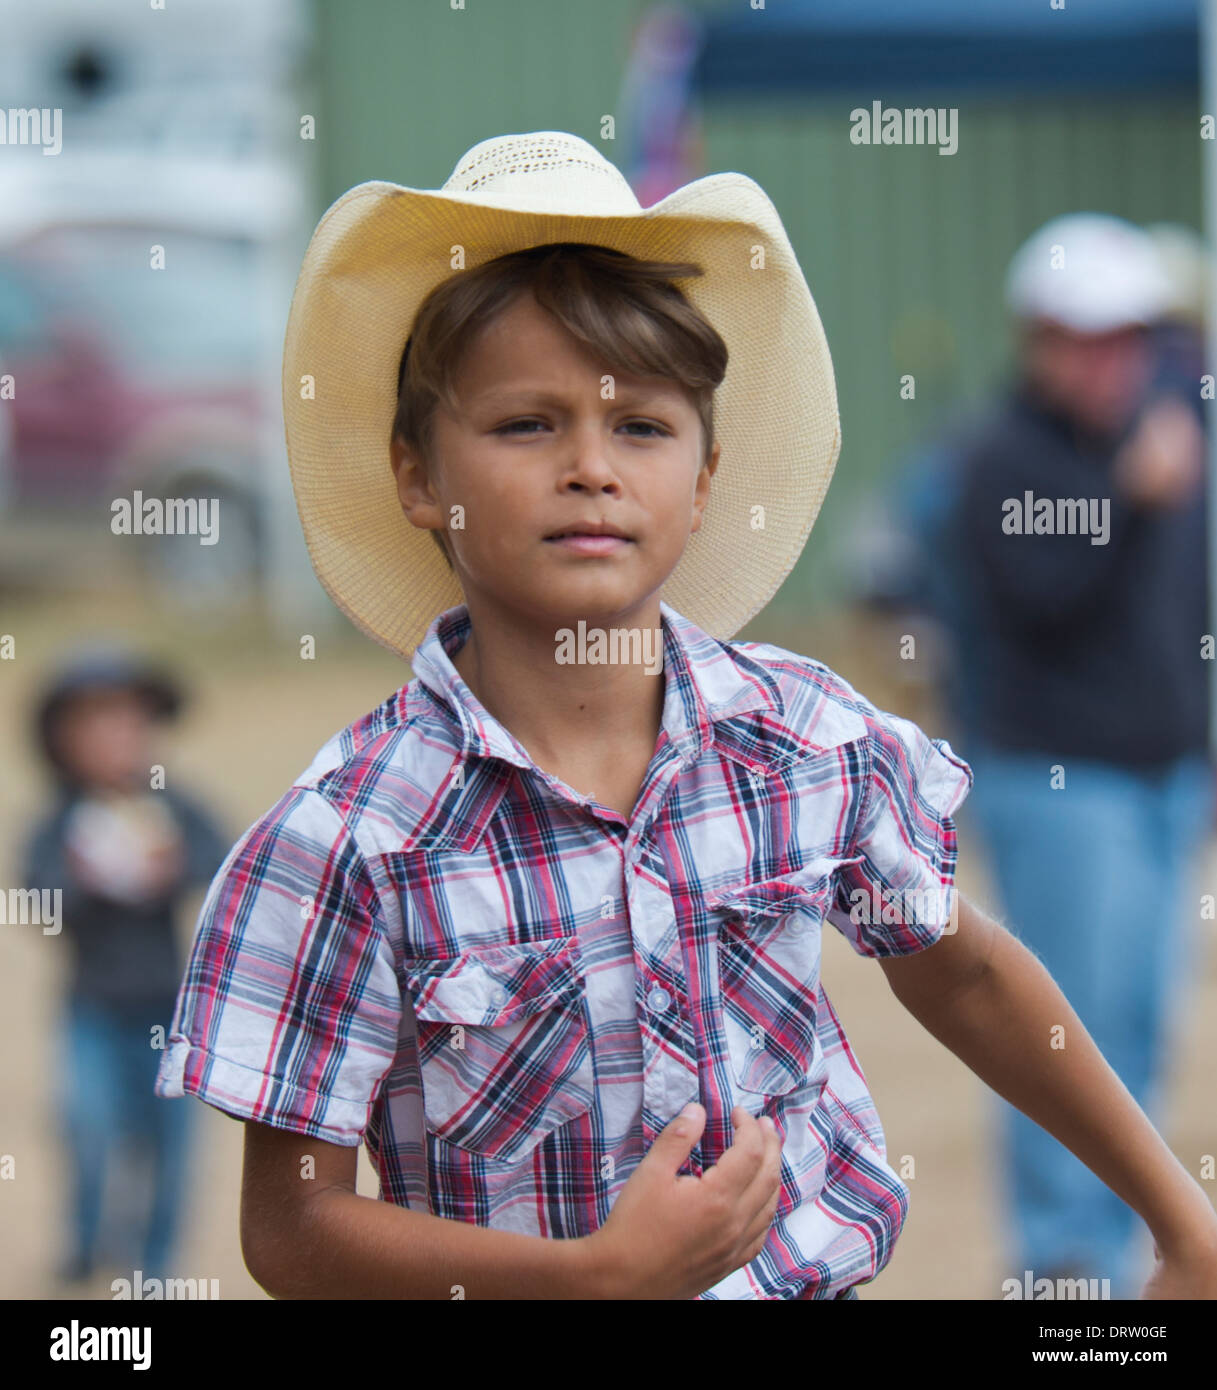 Jeune Australienne garçon portant un chapeau de cowboy Blanc - Australie  Photo Stock - Alamy